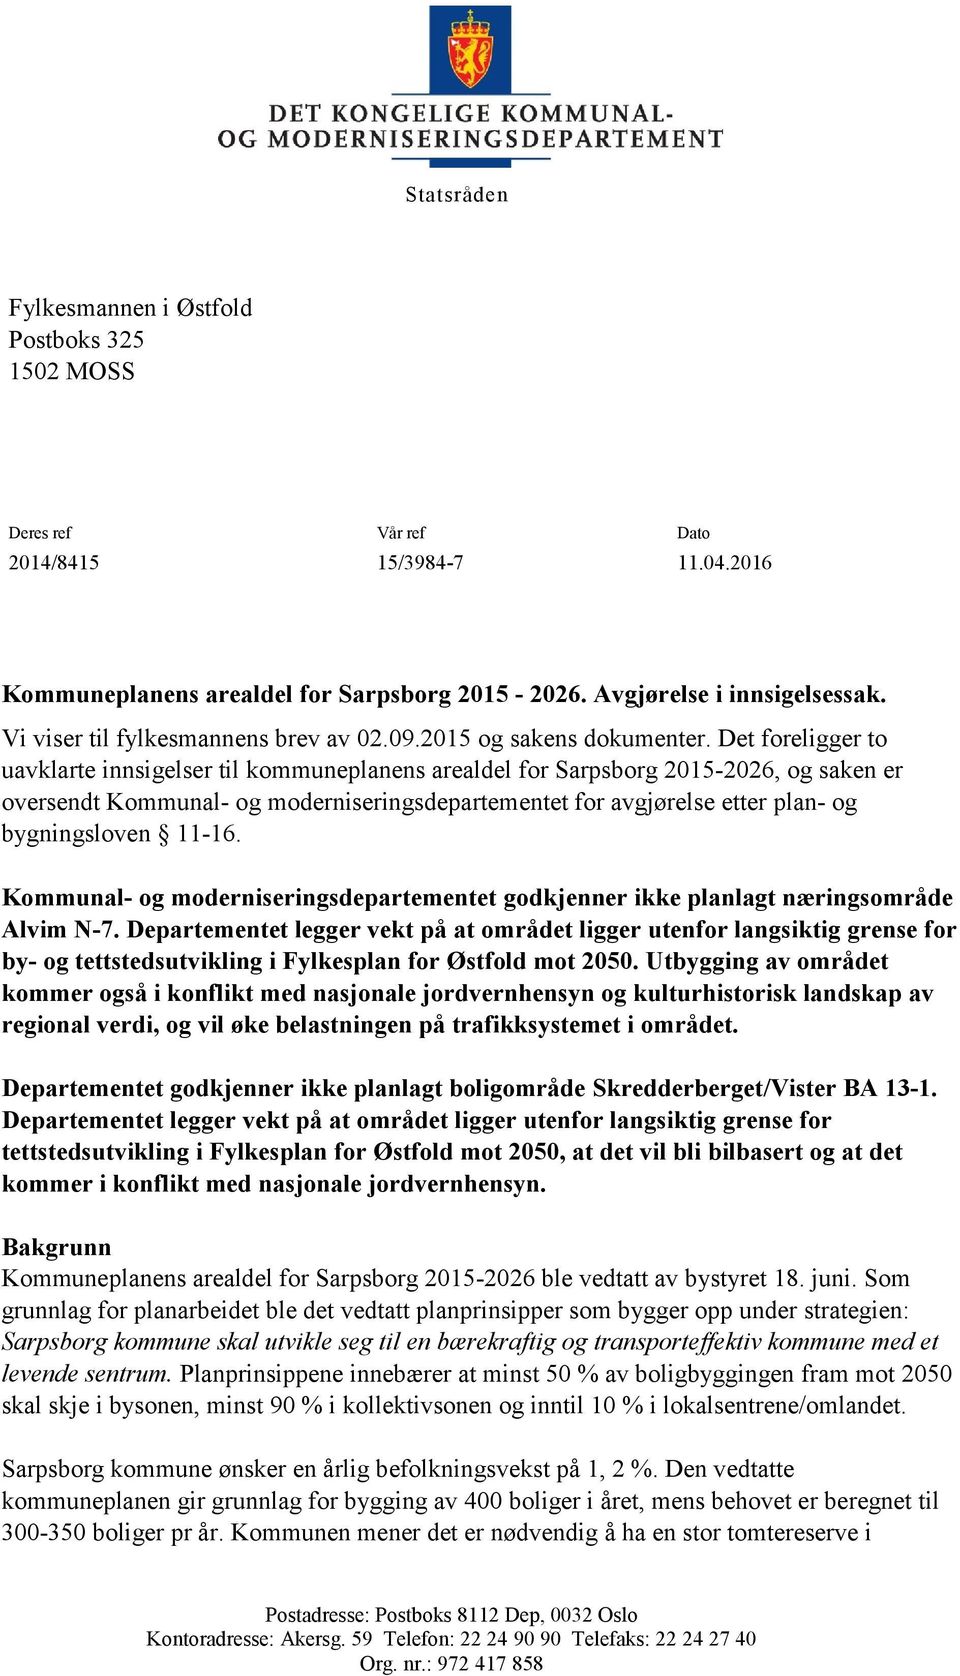 Det foreligger to uavklarte innsigelser til kommuneplanens arealdel for Sarpsborg 2015-2026, og saken er oversendt Kommunal- og moderniseringsdepartementet for avgjørelse etter plan- og bygningsloven